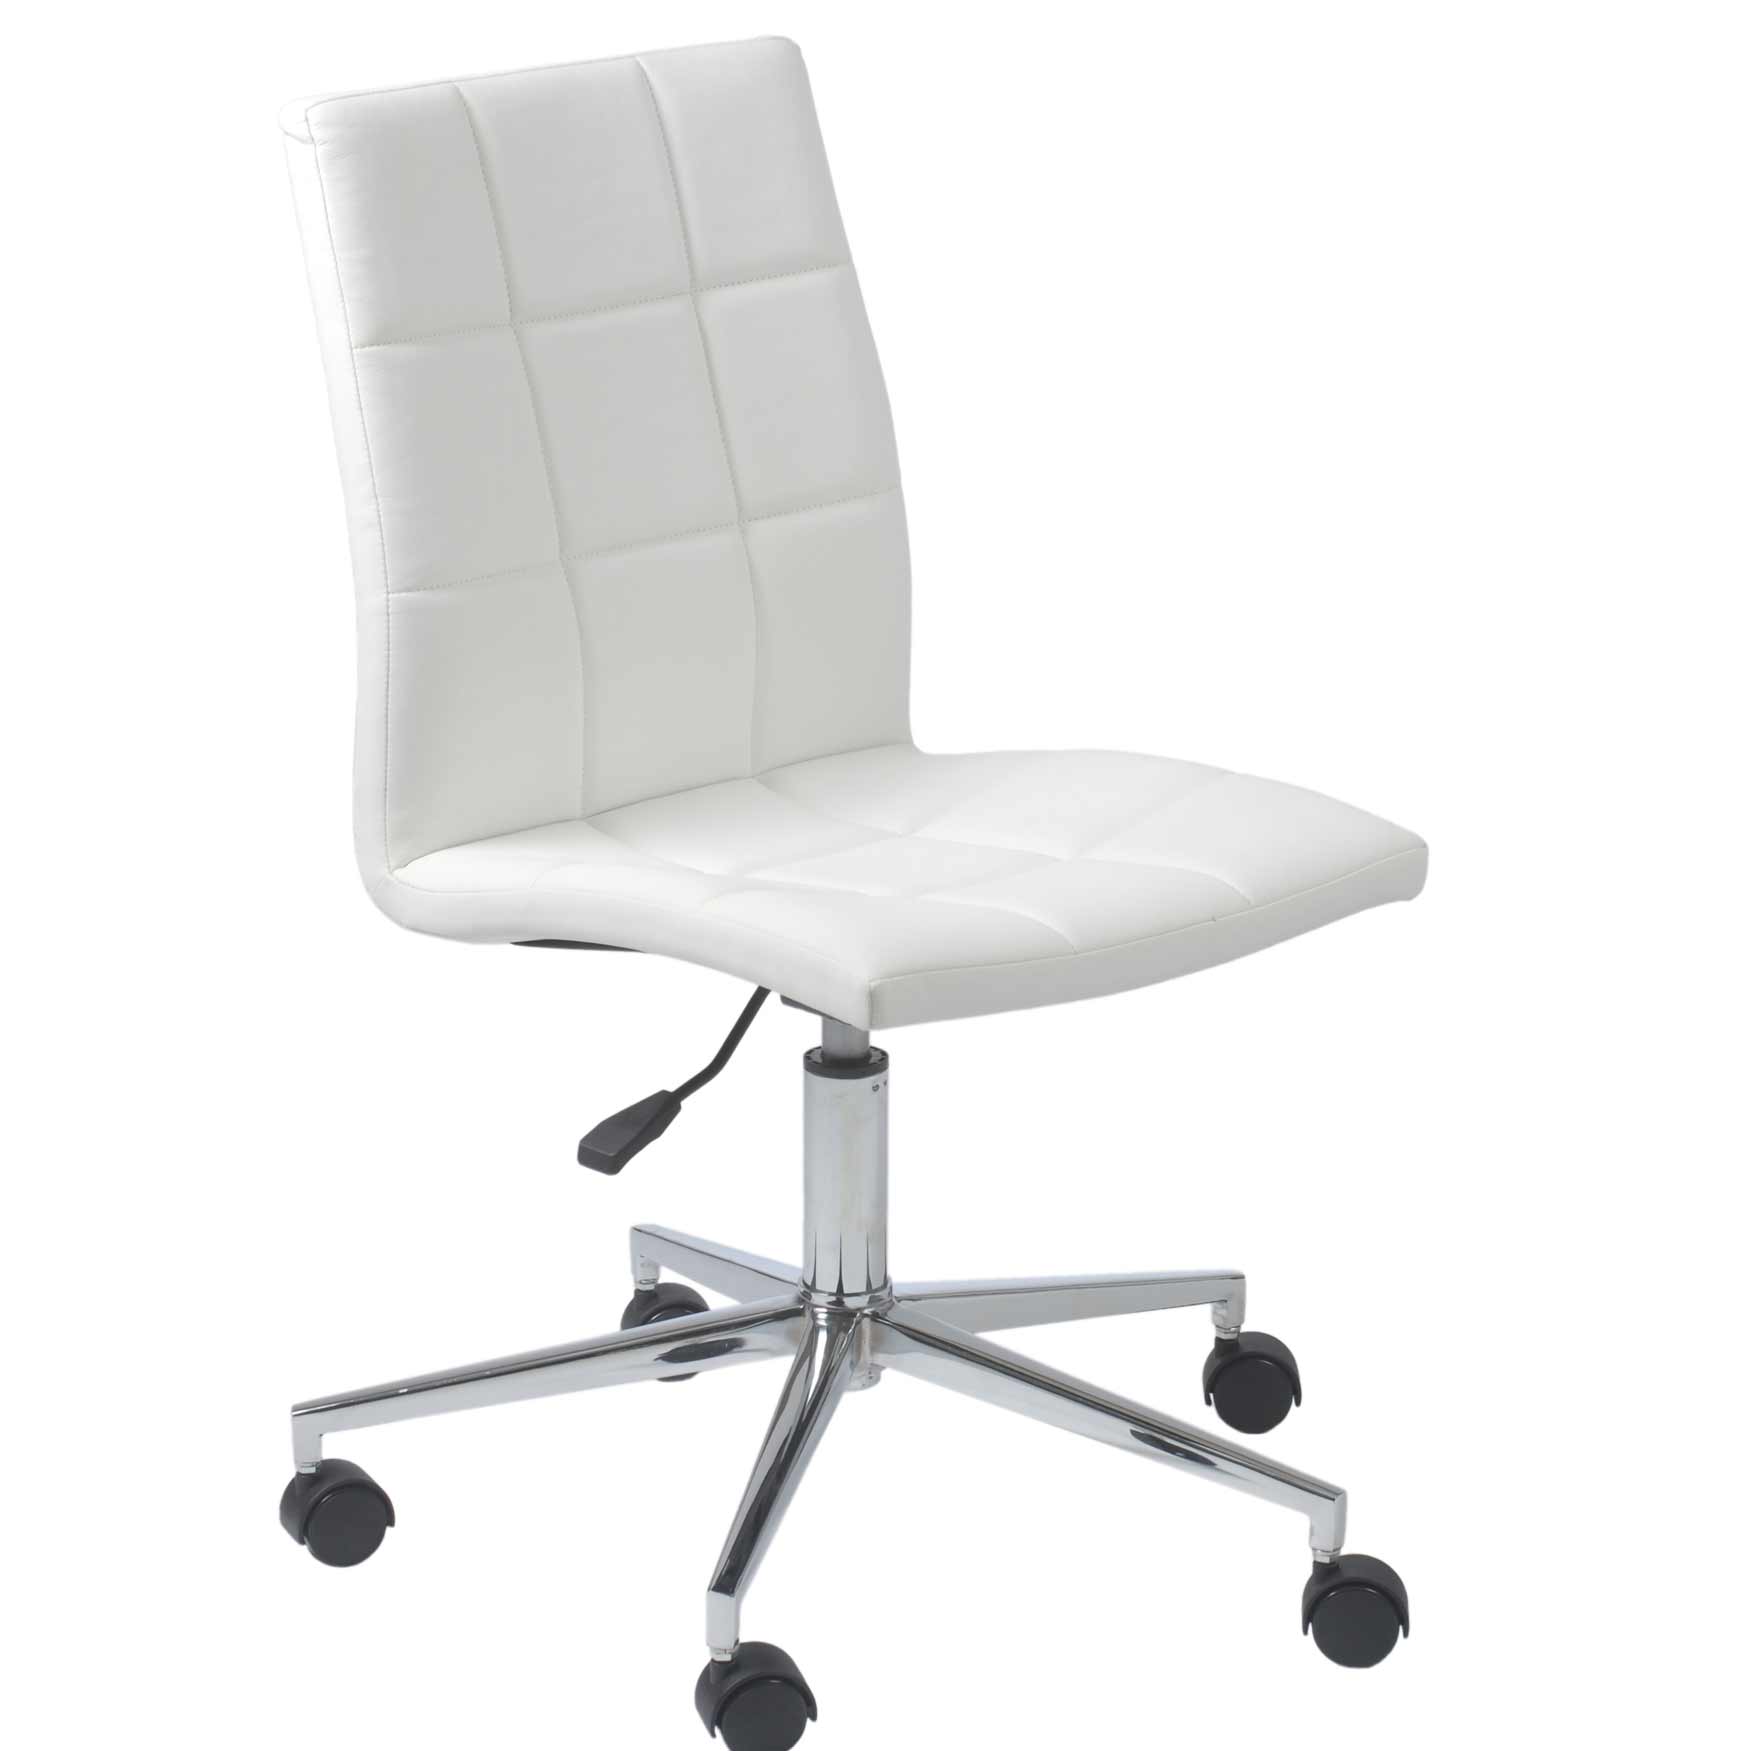 white computer chair